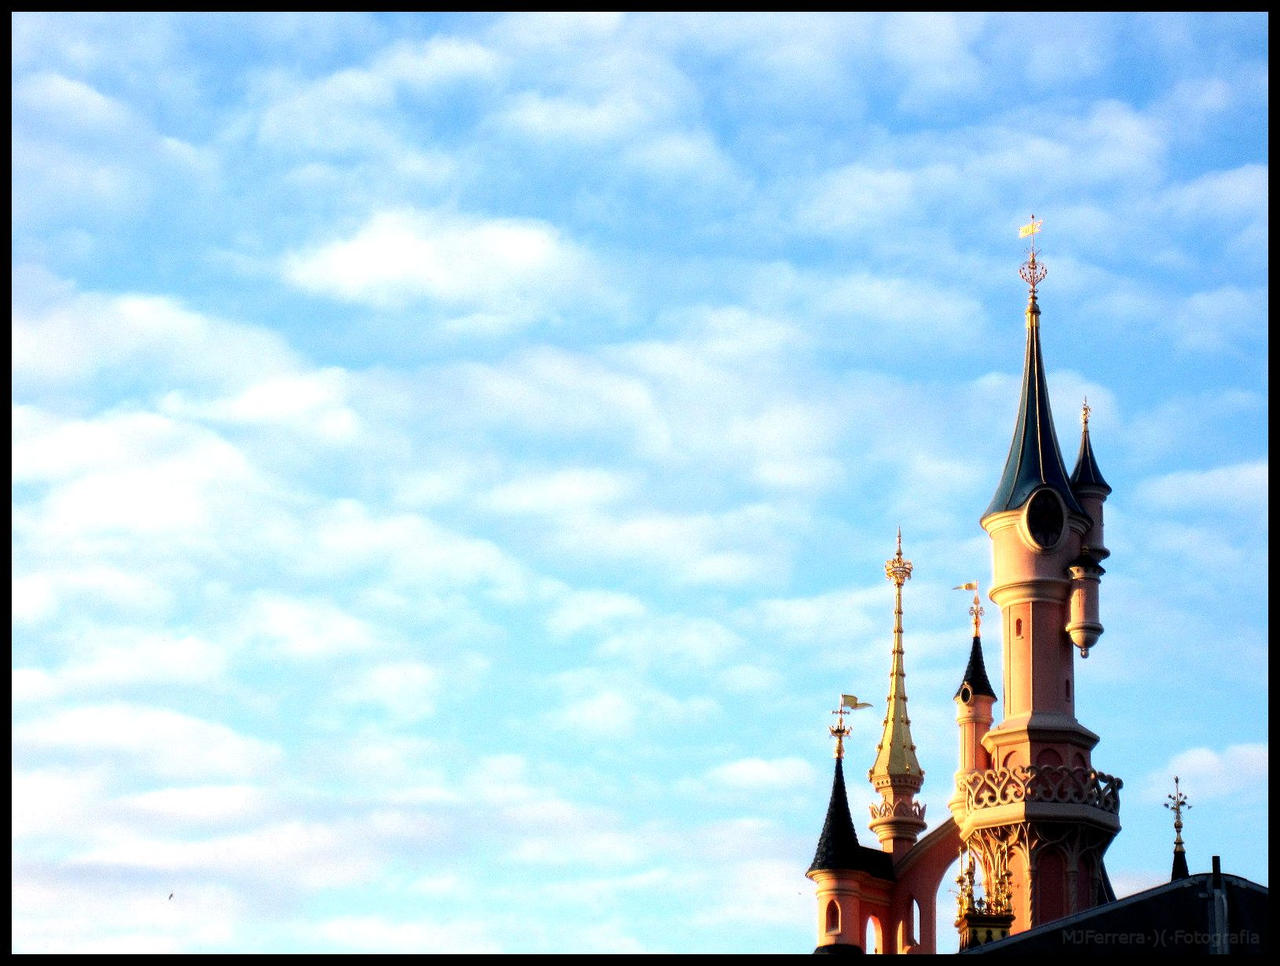 Castillo Disney Disney's castle by Cildrin on DeviantArt